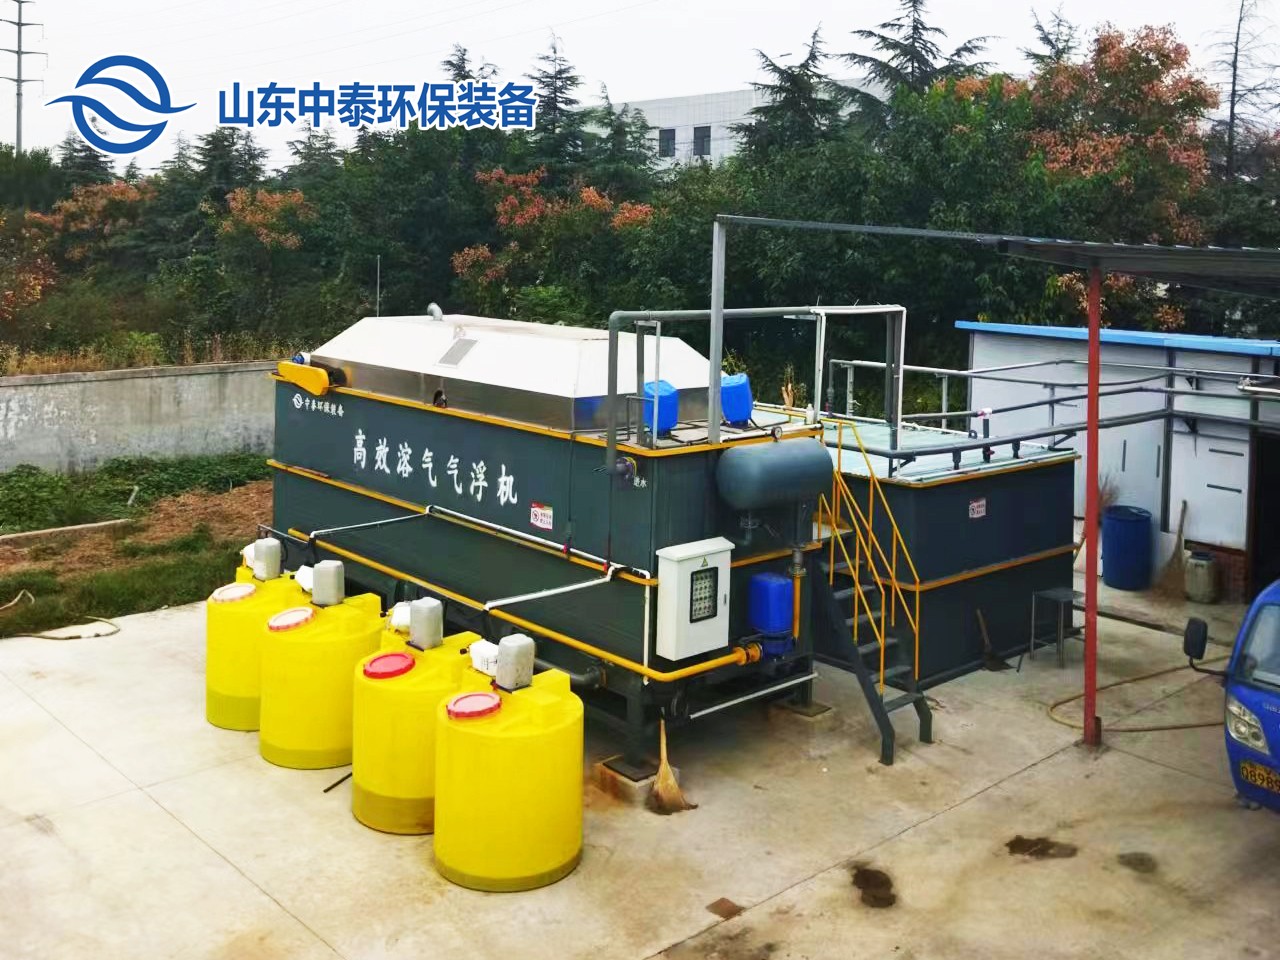 溶气气浮机作为预处理设备在屠宰污水处理工作中的应用